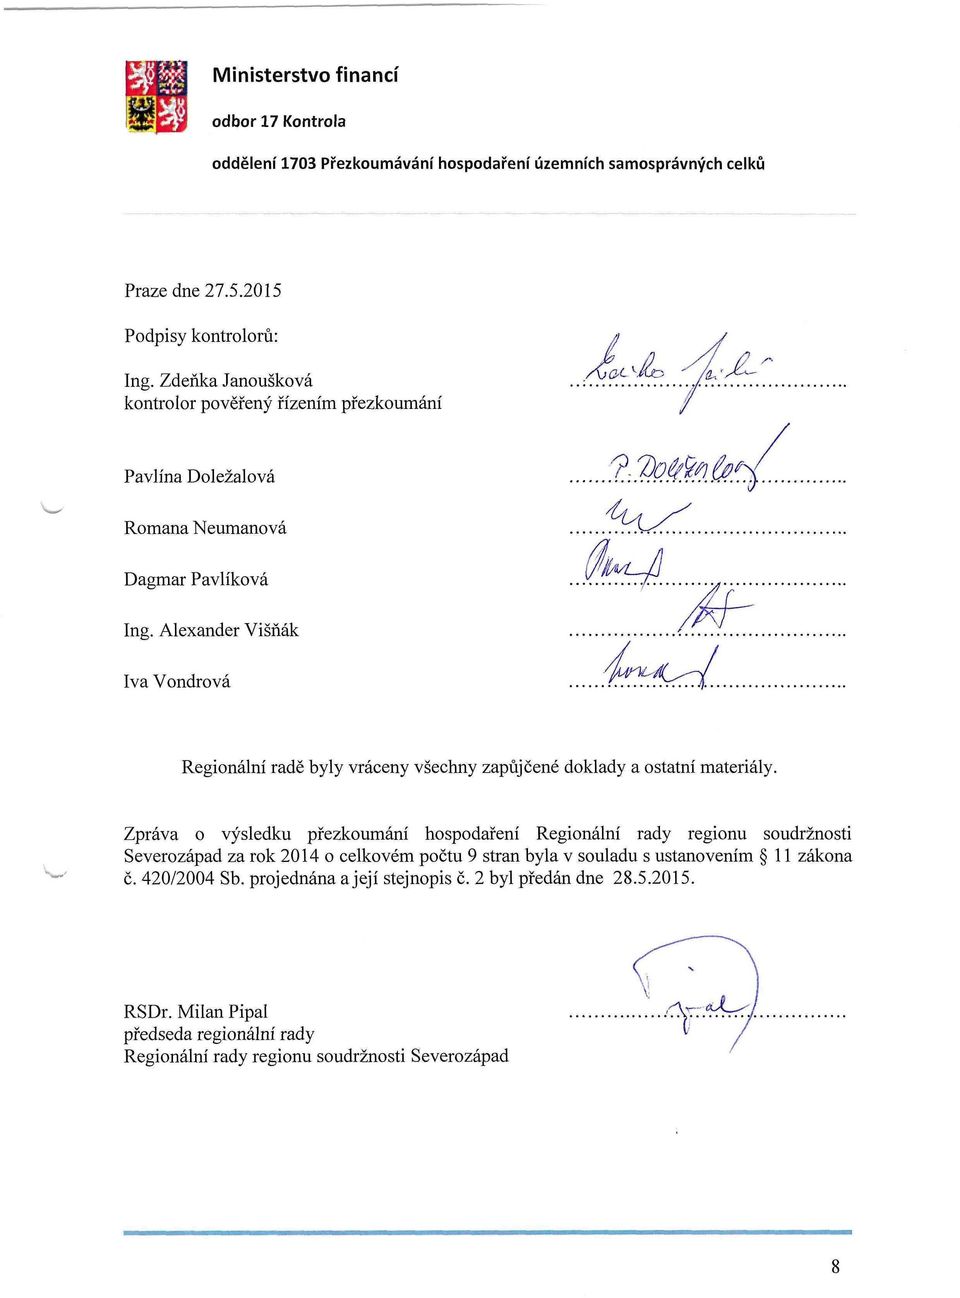 Alexander Višňák Iva Vondrová Regionální radě byly vráceny všechny zapůjčené doklady a ostatní materiály.